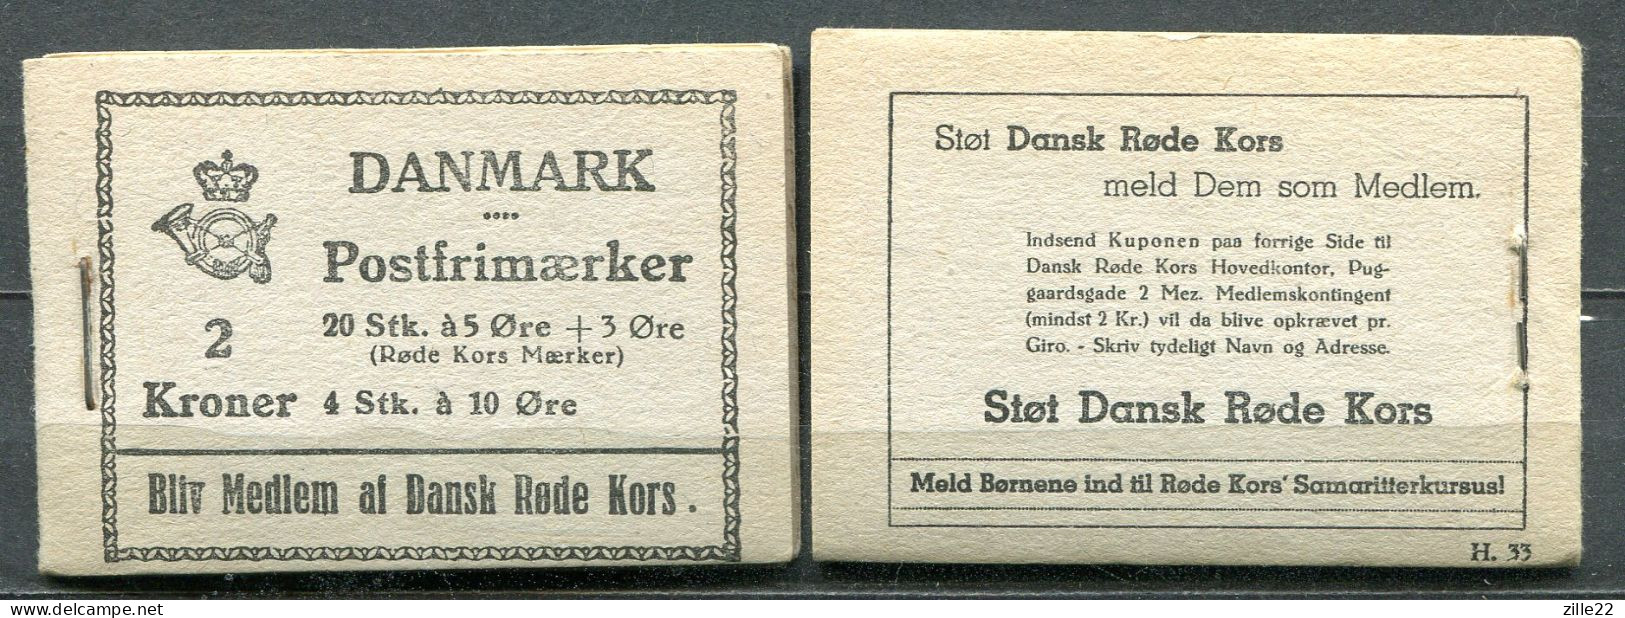 Dänemark Denmark 2 Kr Markenheft Handmade And Complete - Postfrisch/MNH - 1943 Red Cross Commercial H33 - Carnets